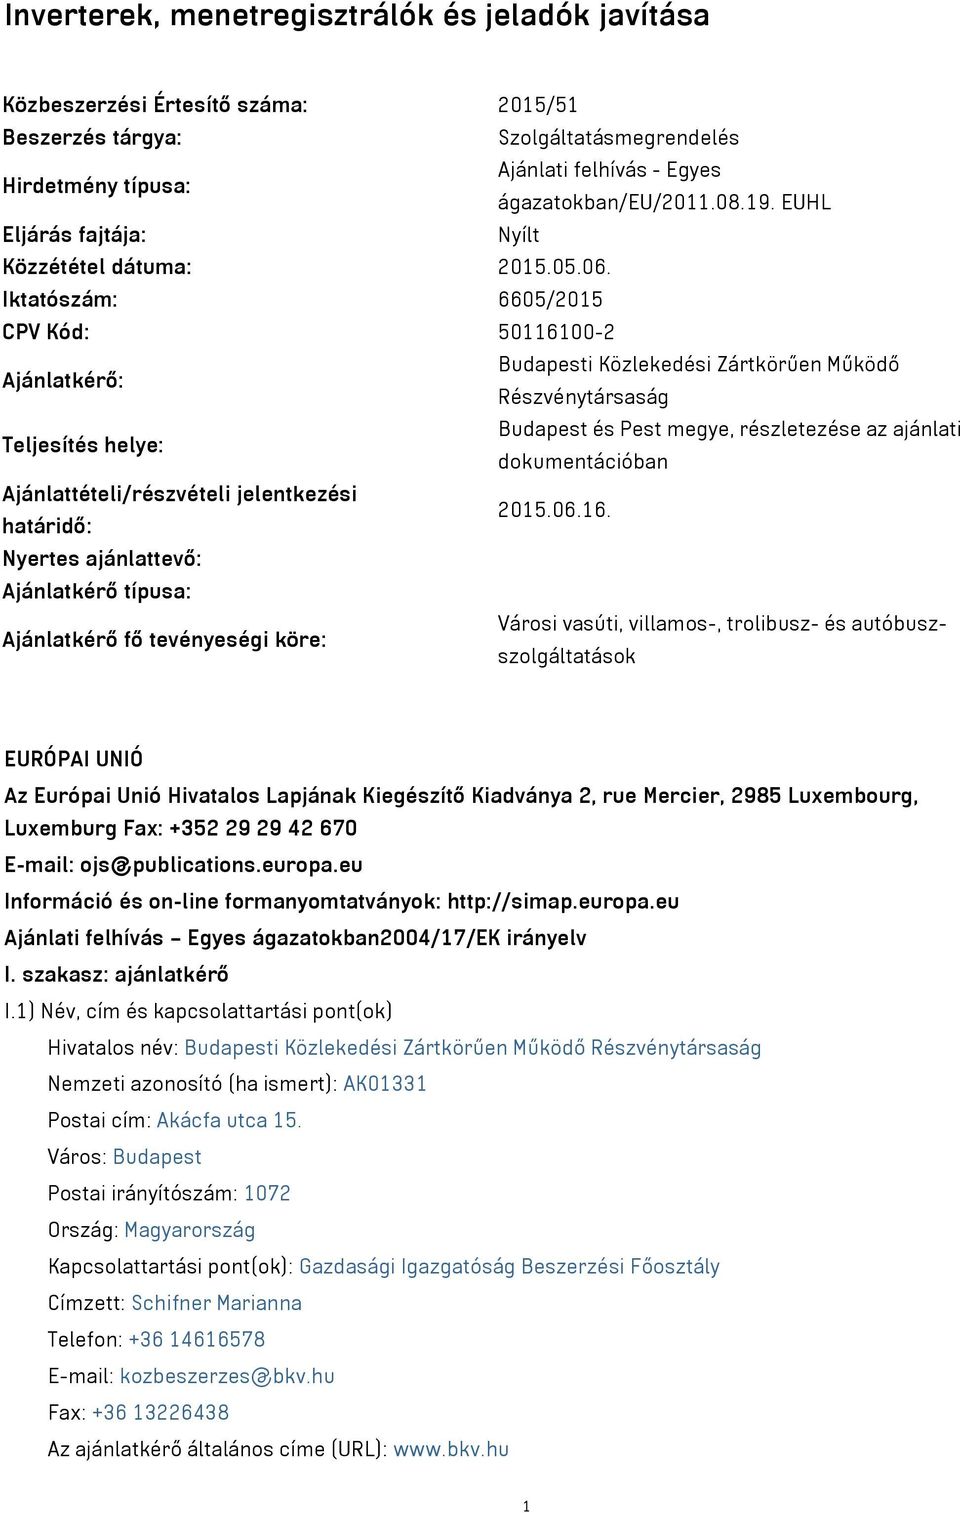 Iktatószám: 6605/2015 CPV Kód: 50116100-2 Ajánlatkérő: Budapesti Közlekedési Zártkörűen Működő Részvénytársaság Teljesítés helye: Budapest és Pest megye, részletezése az ajánlati dokumentációban